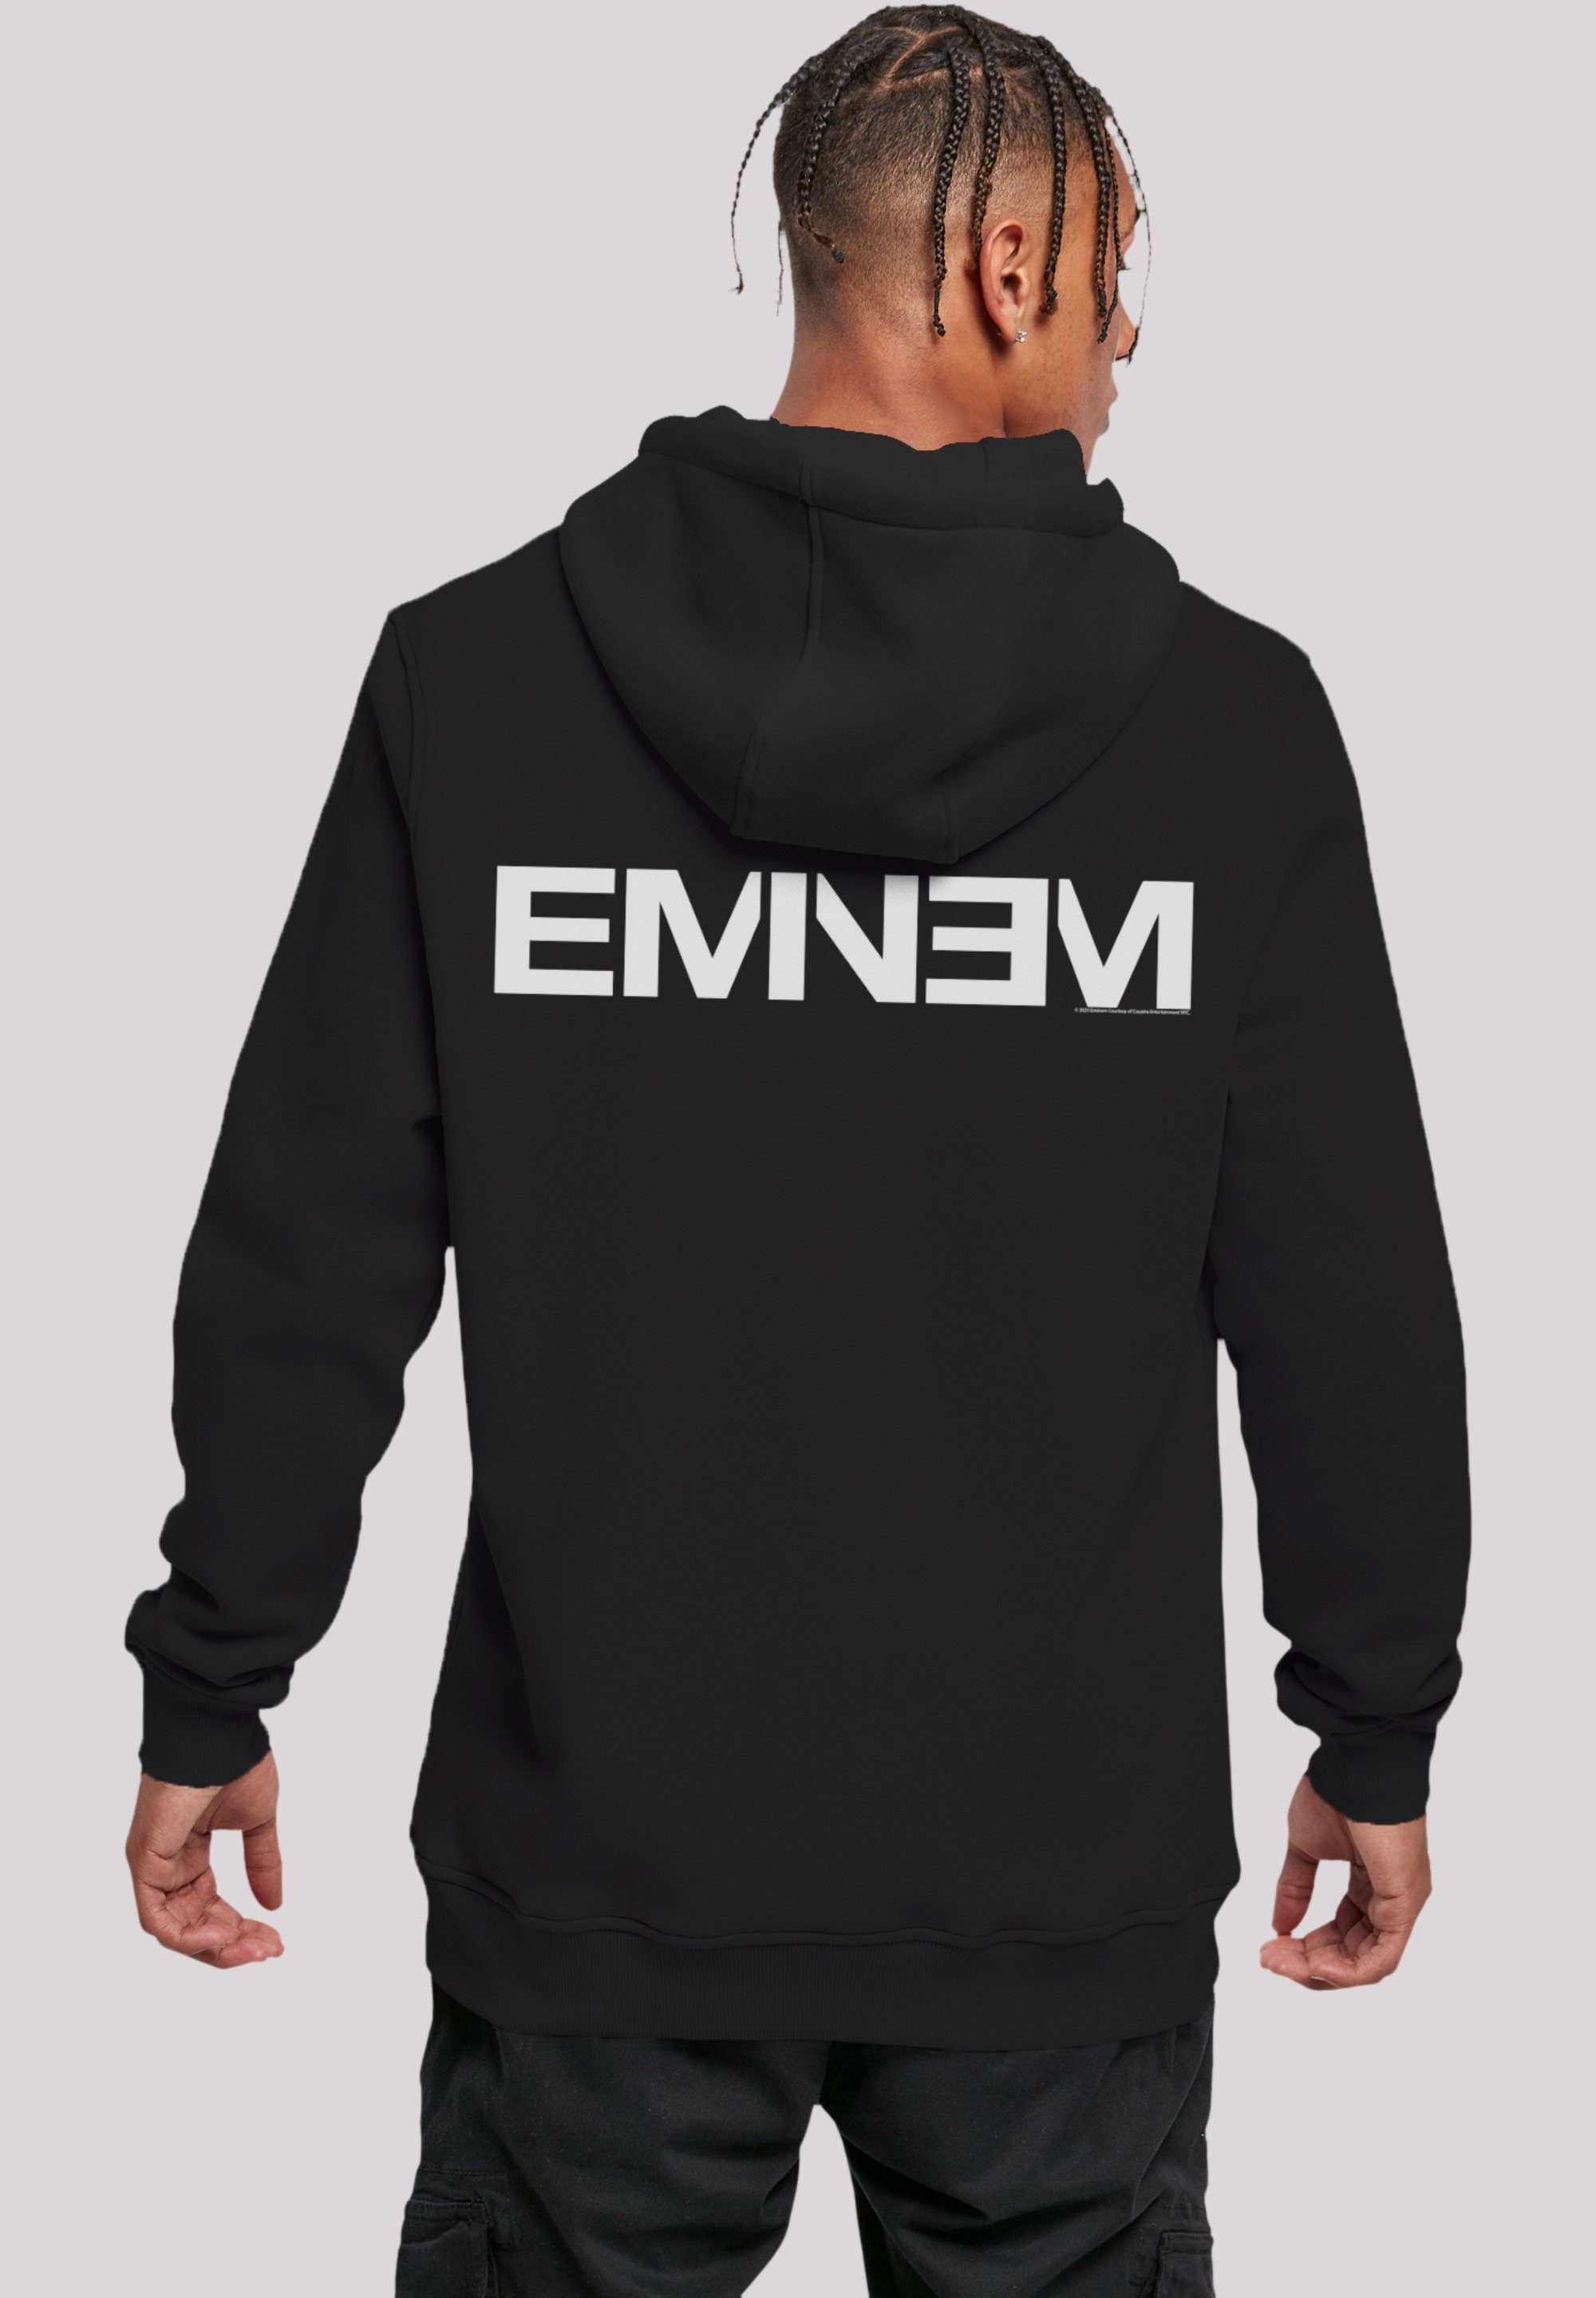 Logo Eminem Band, Qualität, schwarz F4NT4STIC Music Rap Hoodie Premium